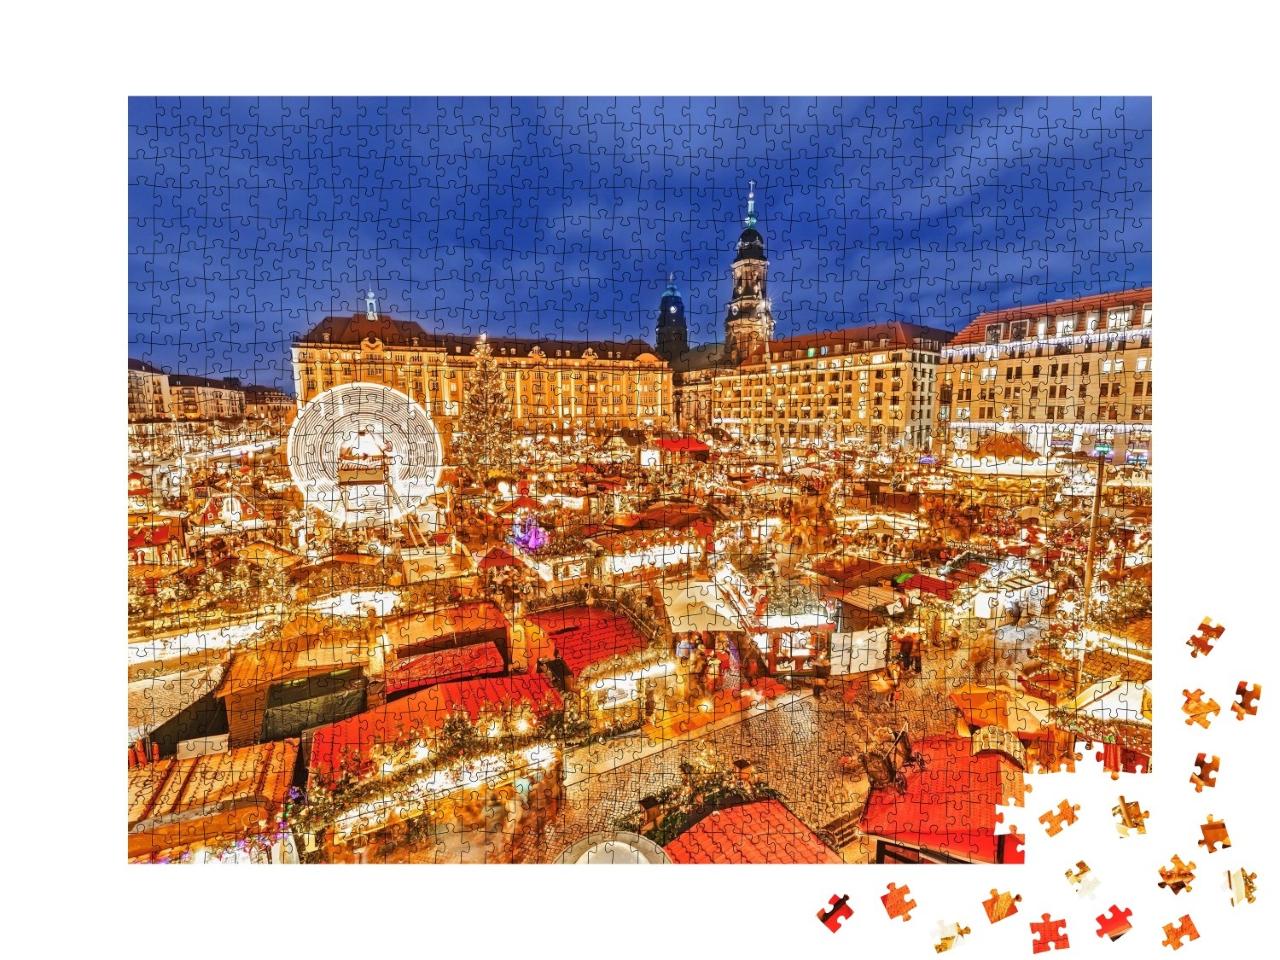 Puzzle de 1000 pièces « Marché de Noël à Dresde, Allemagne »